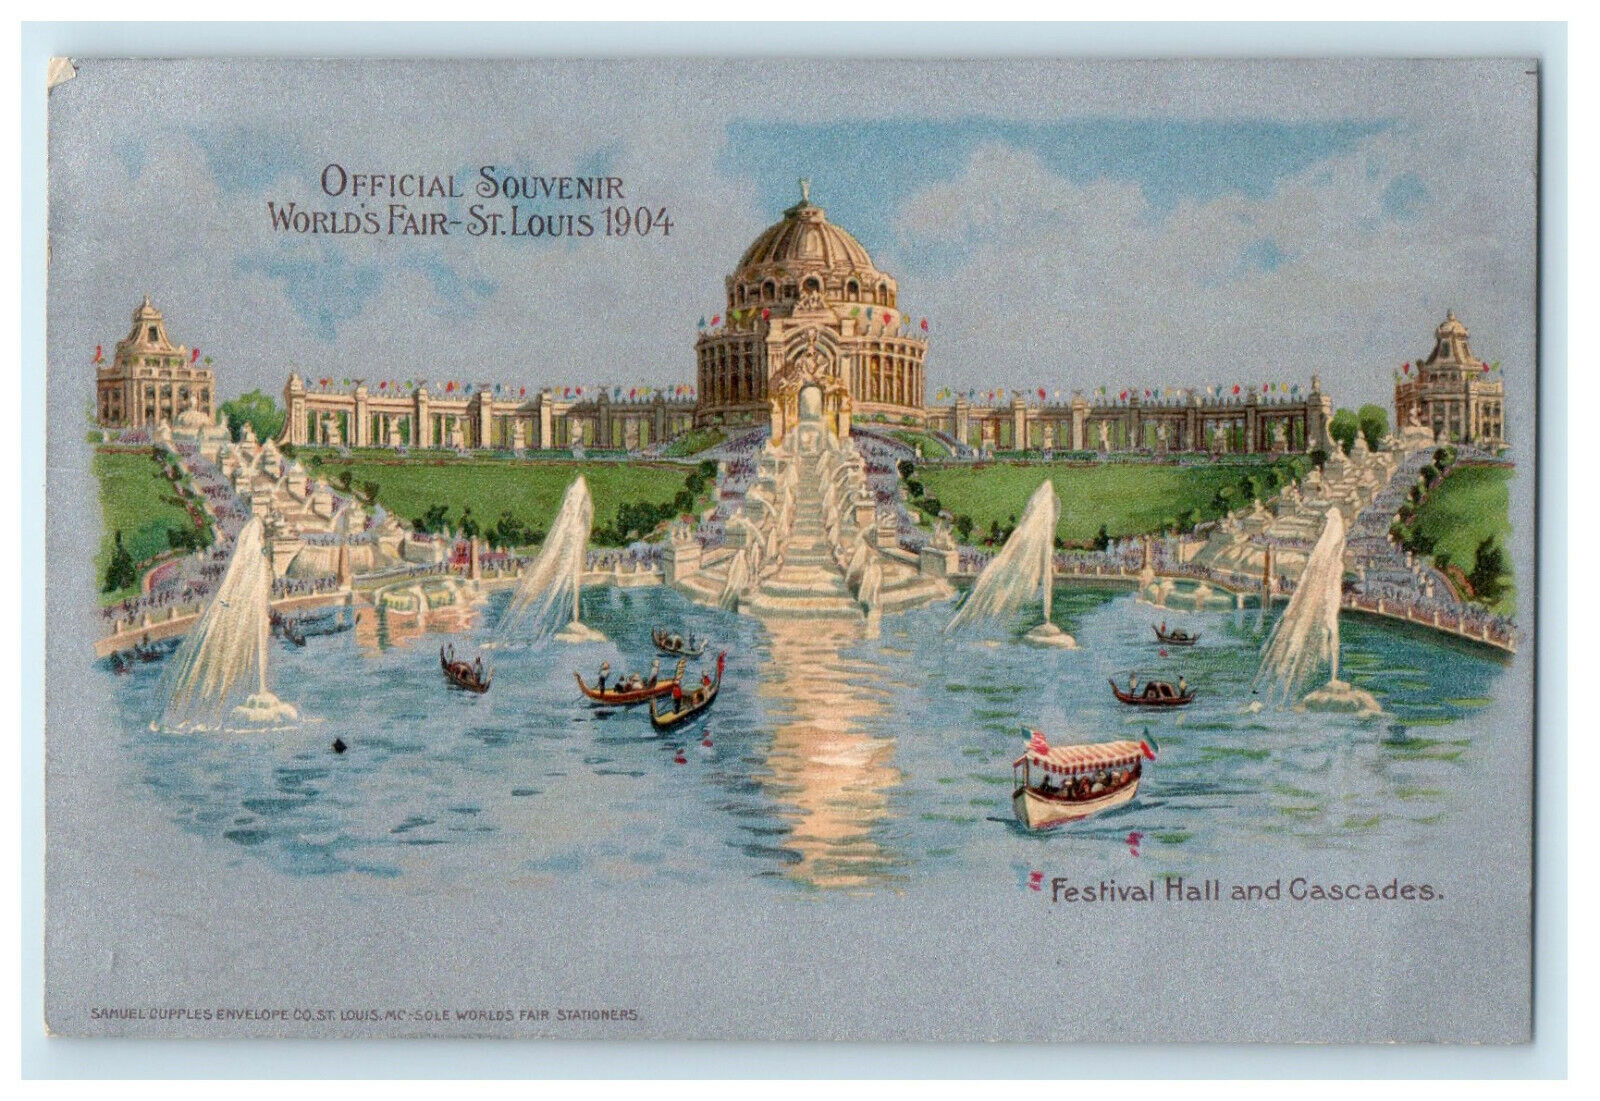 1904 Festival Halls and Cascades, St. Louis Official Souvenir Postcard